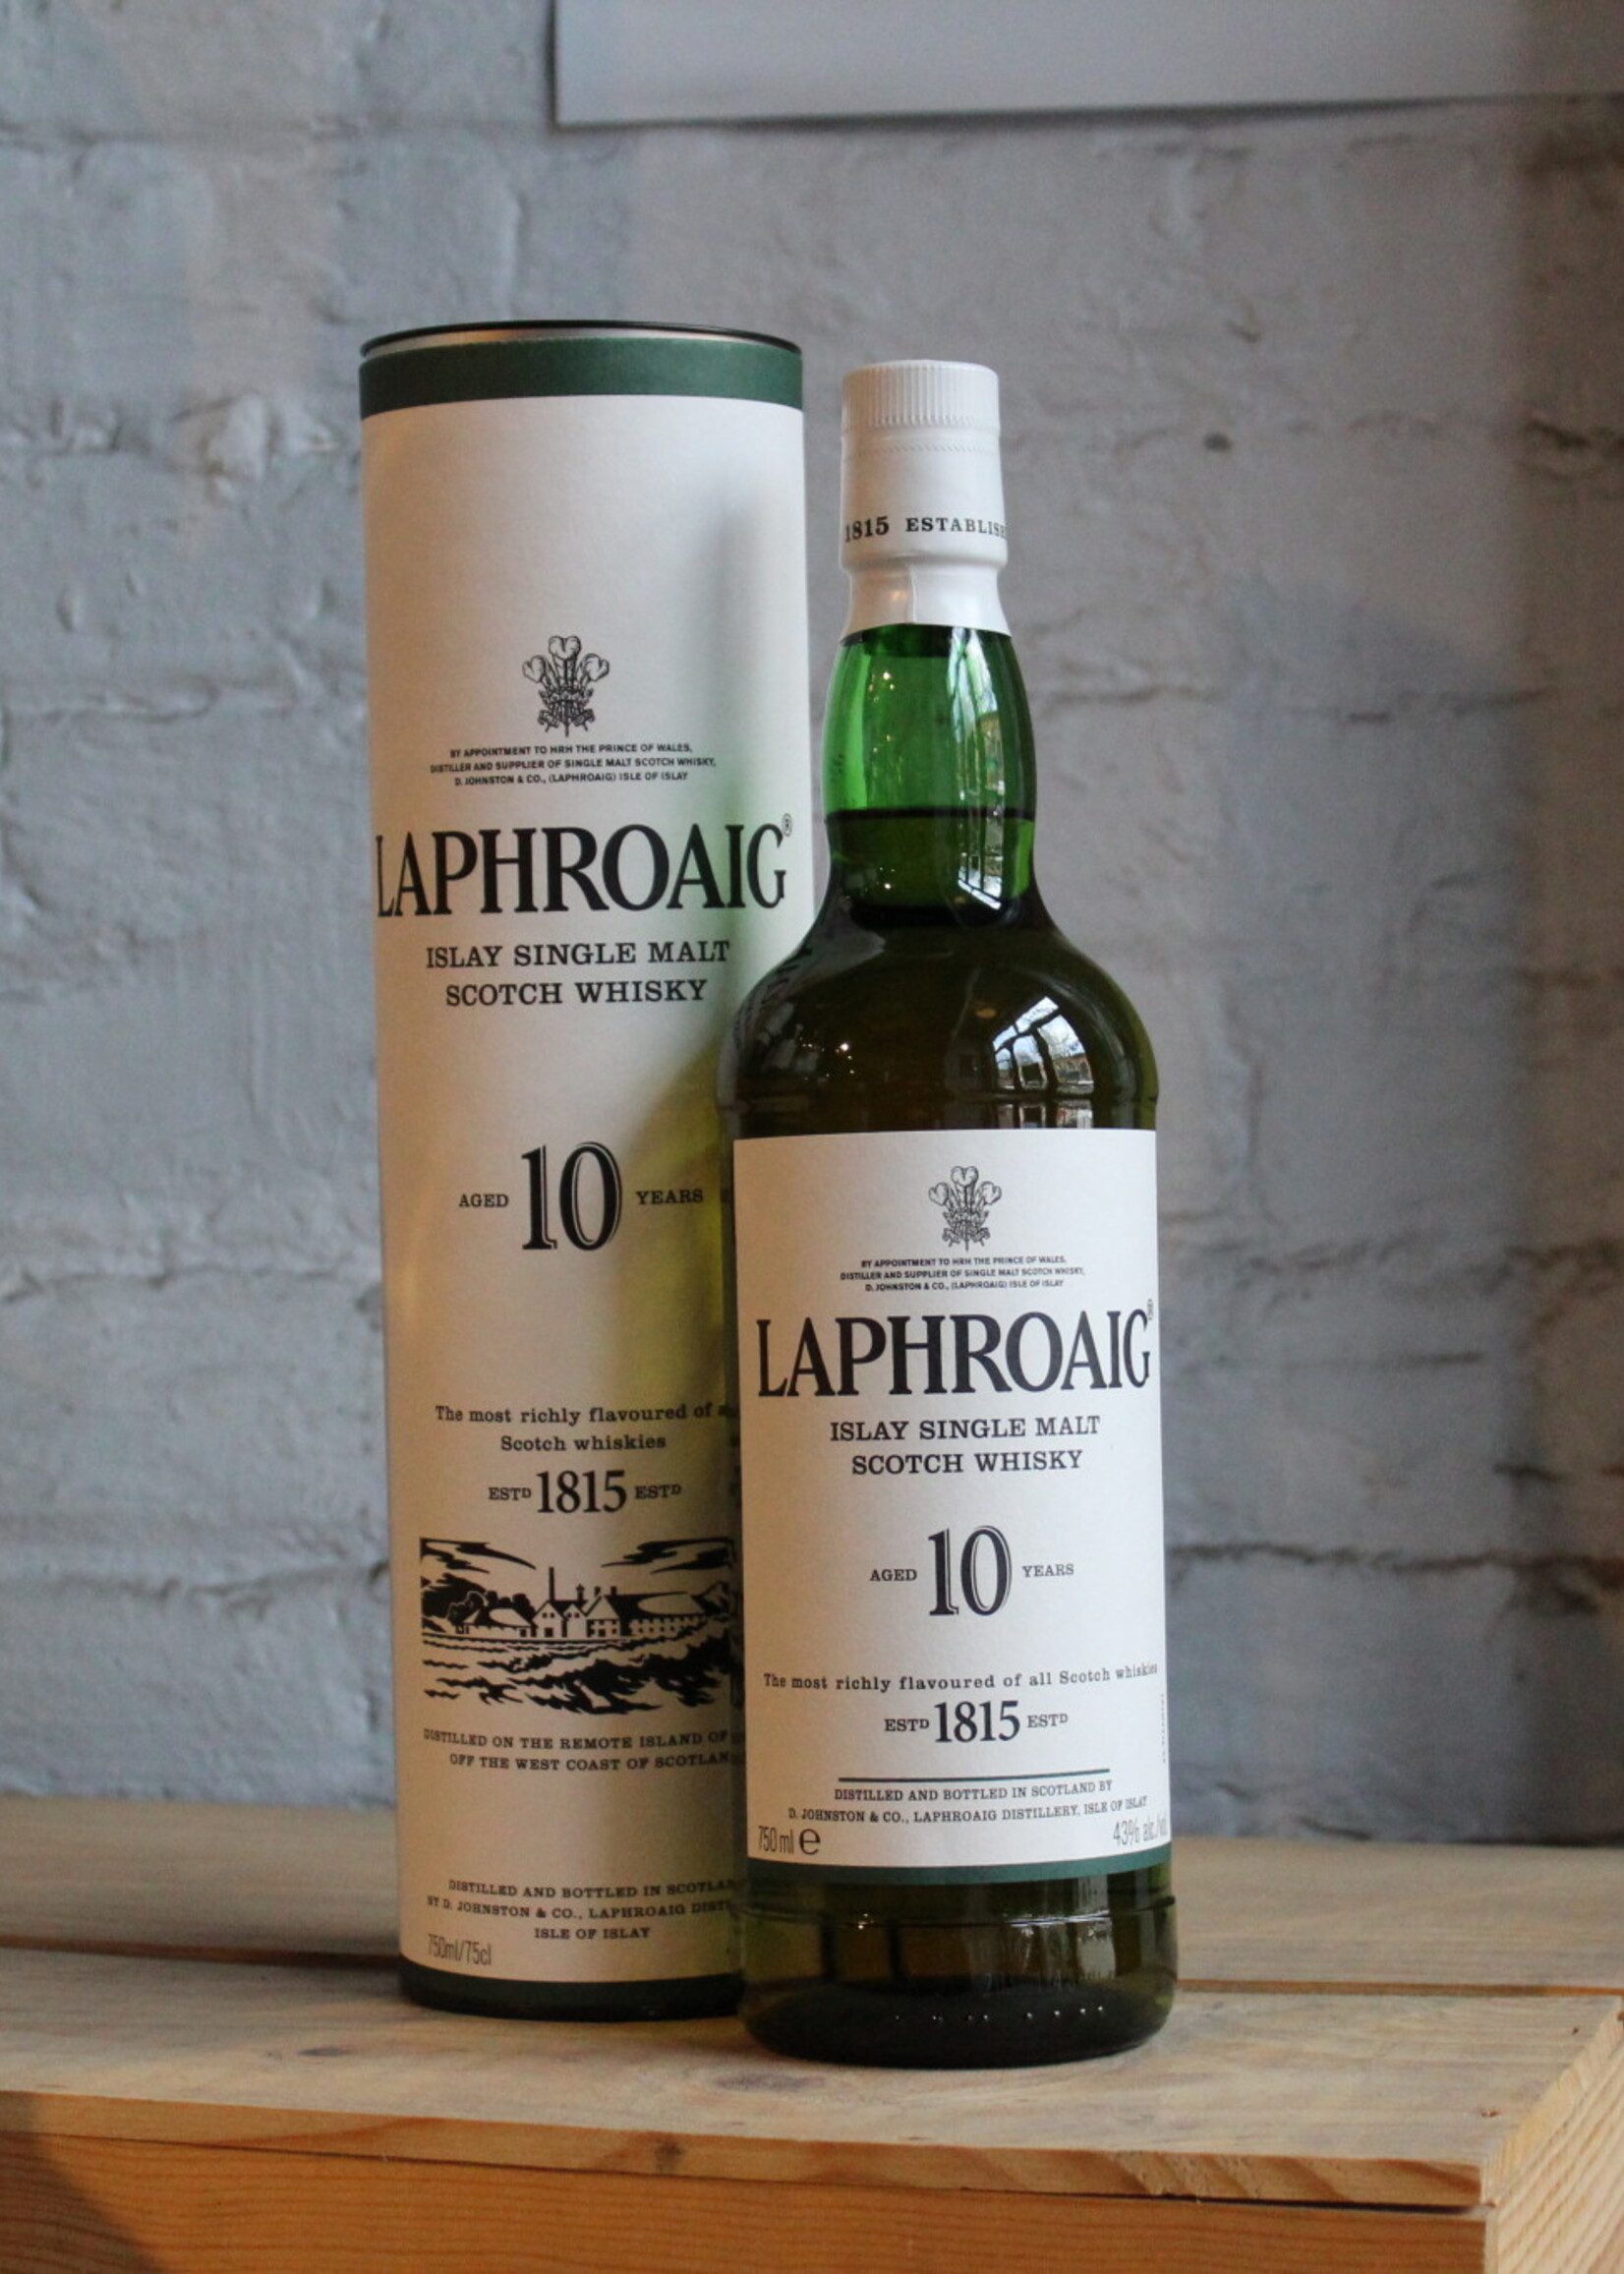 Laphroaig 10yr Single Malt Scotch Whisky - Islay, Scotland (750ml